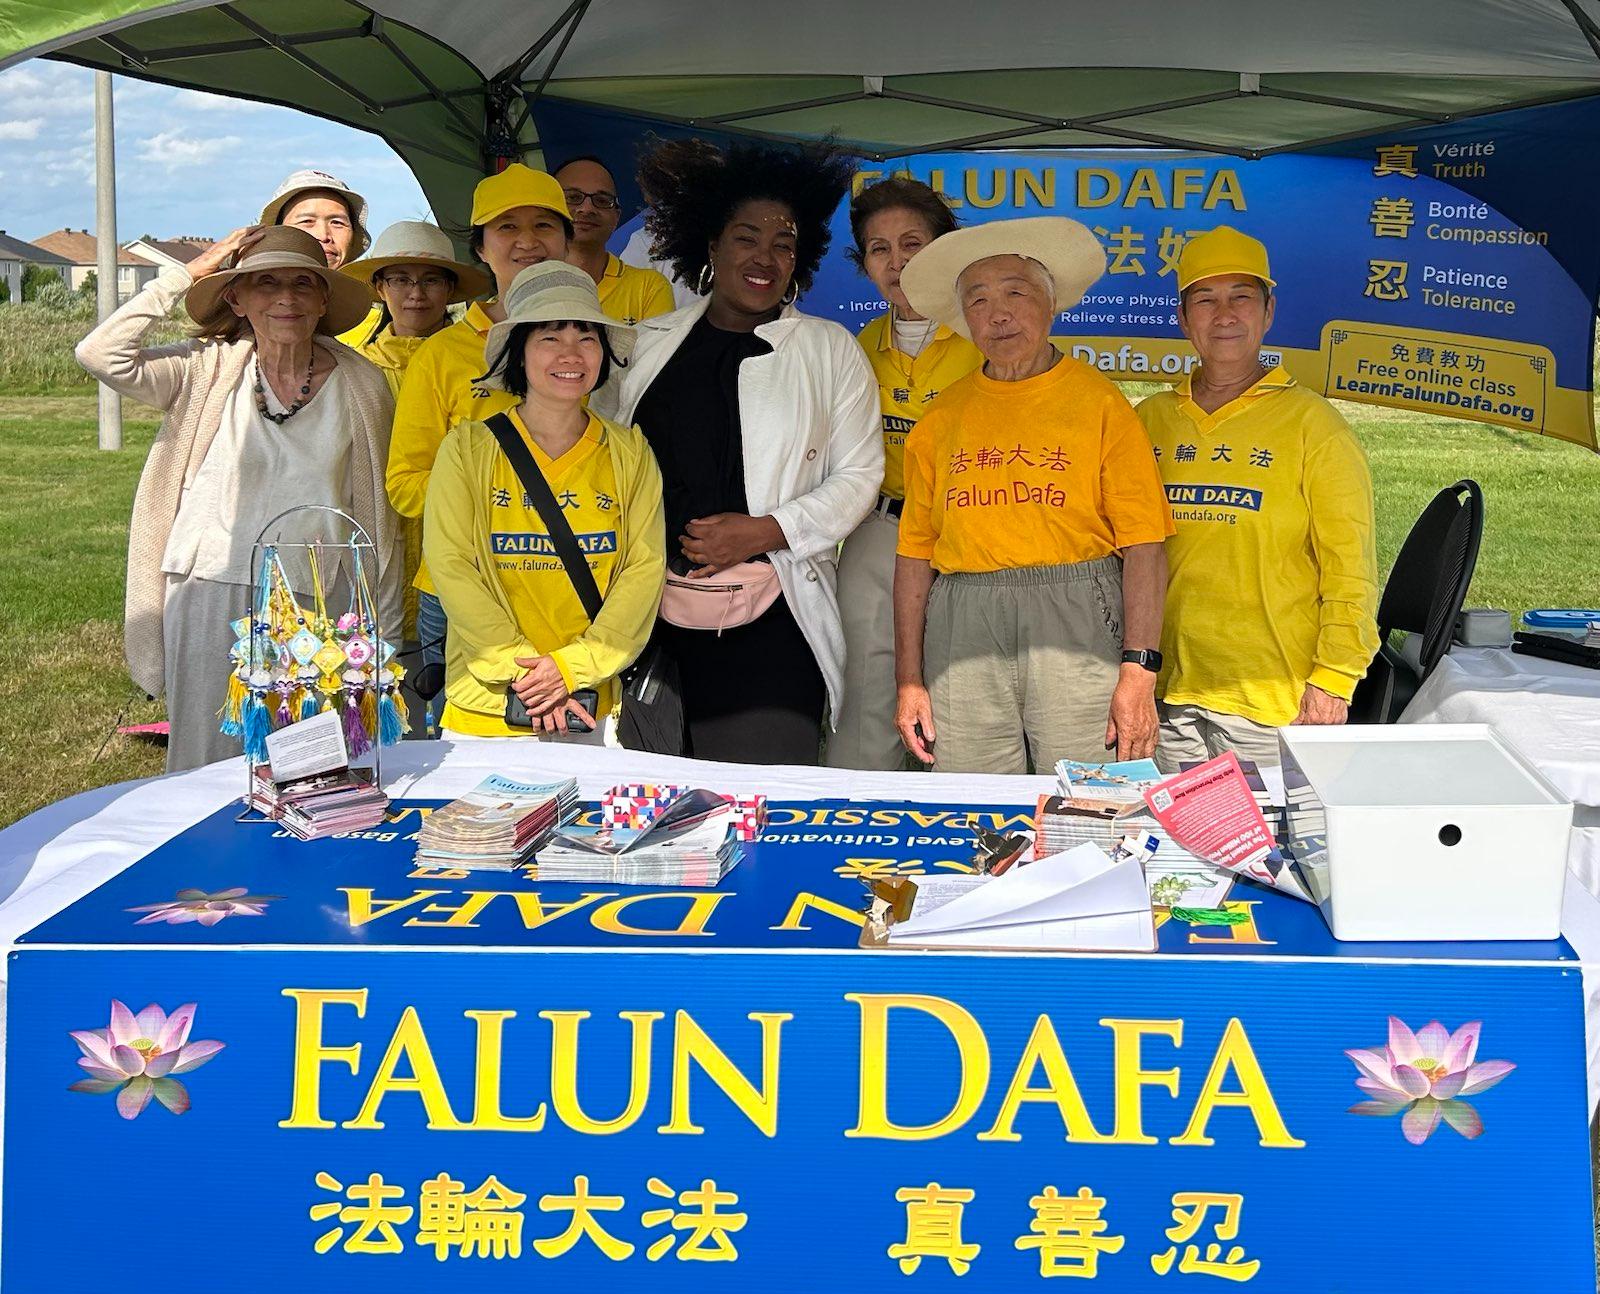 Image for article Ottawa: dando a conocer Falun Dafa en un evento en la comunidad